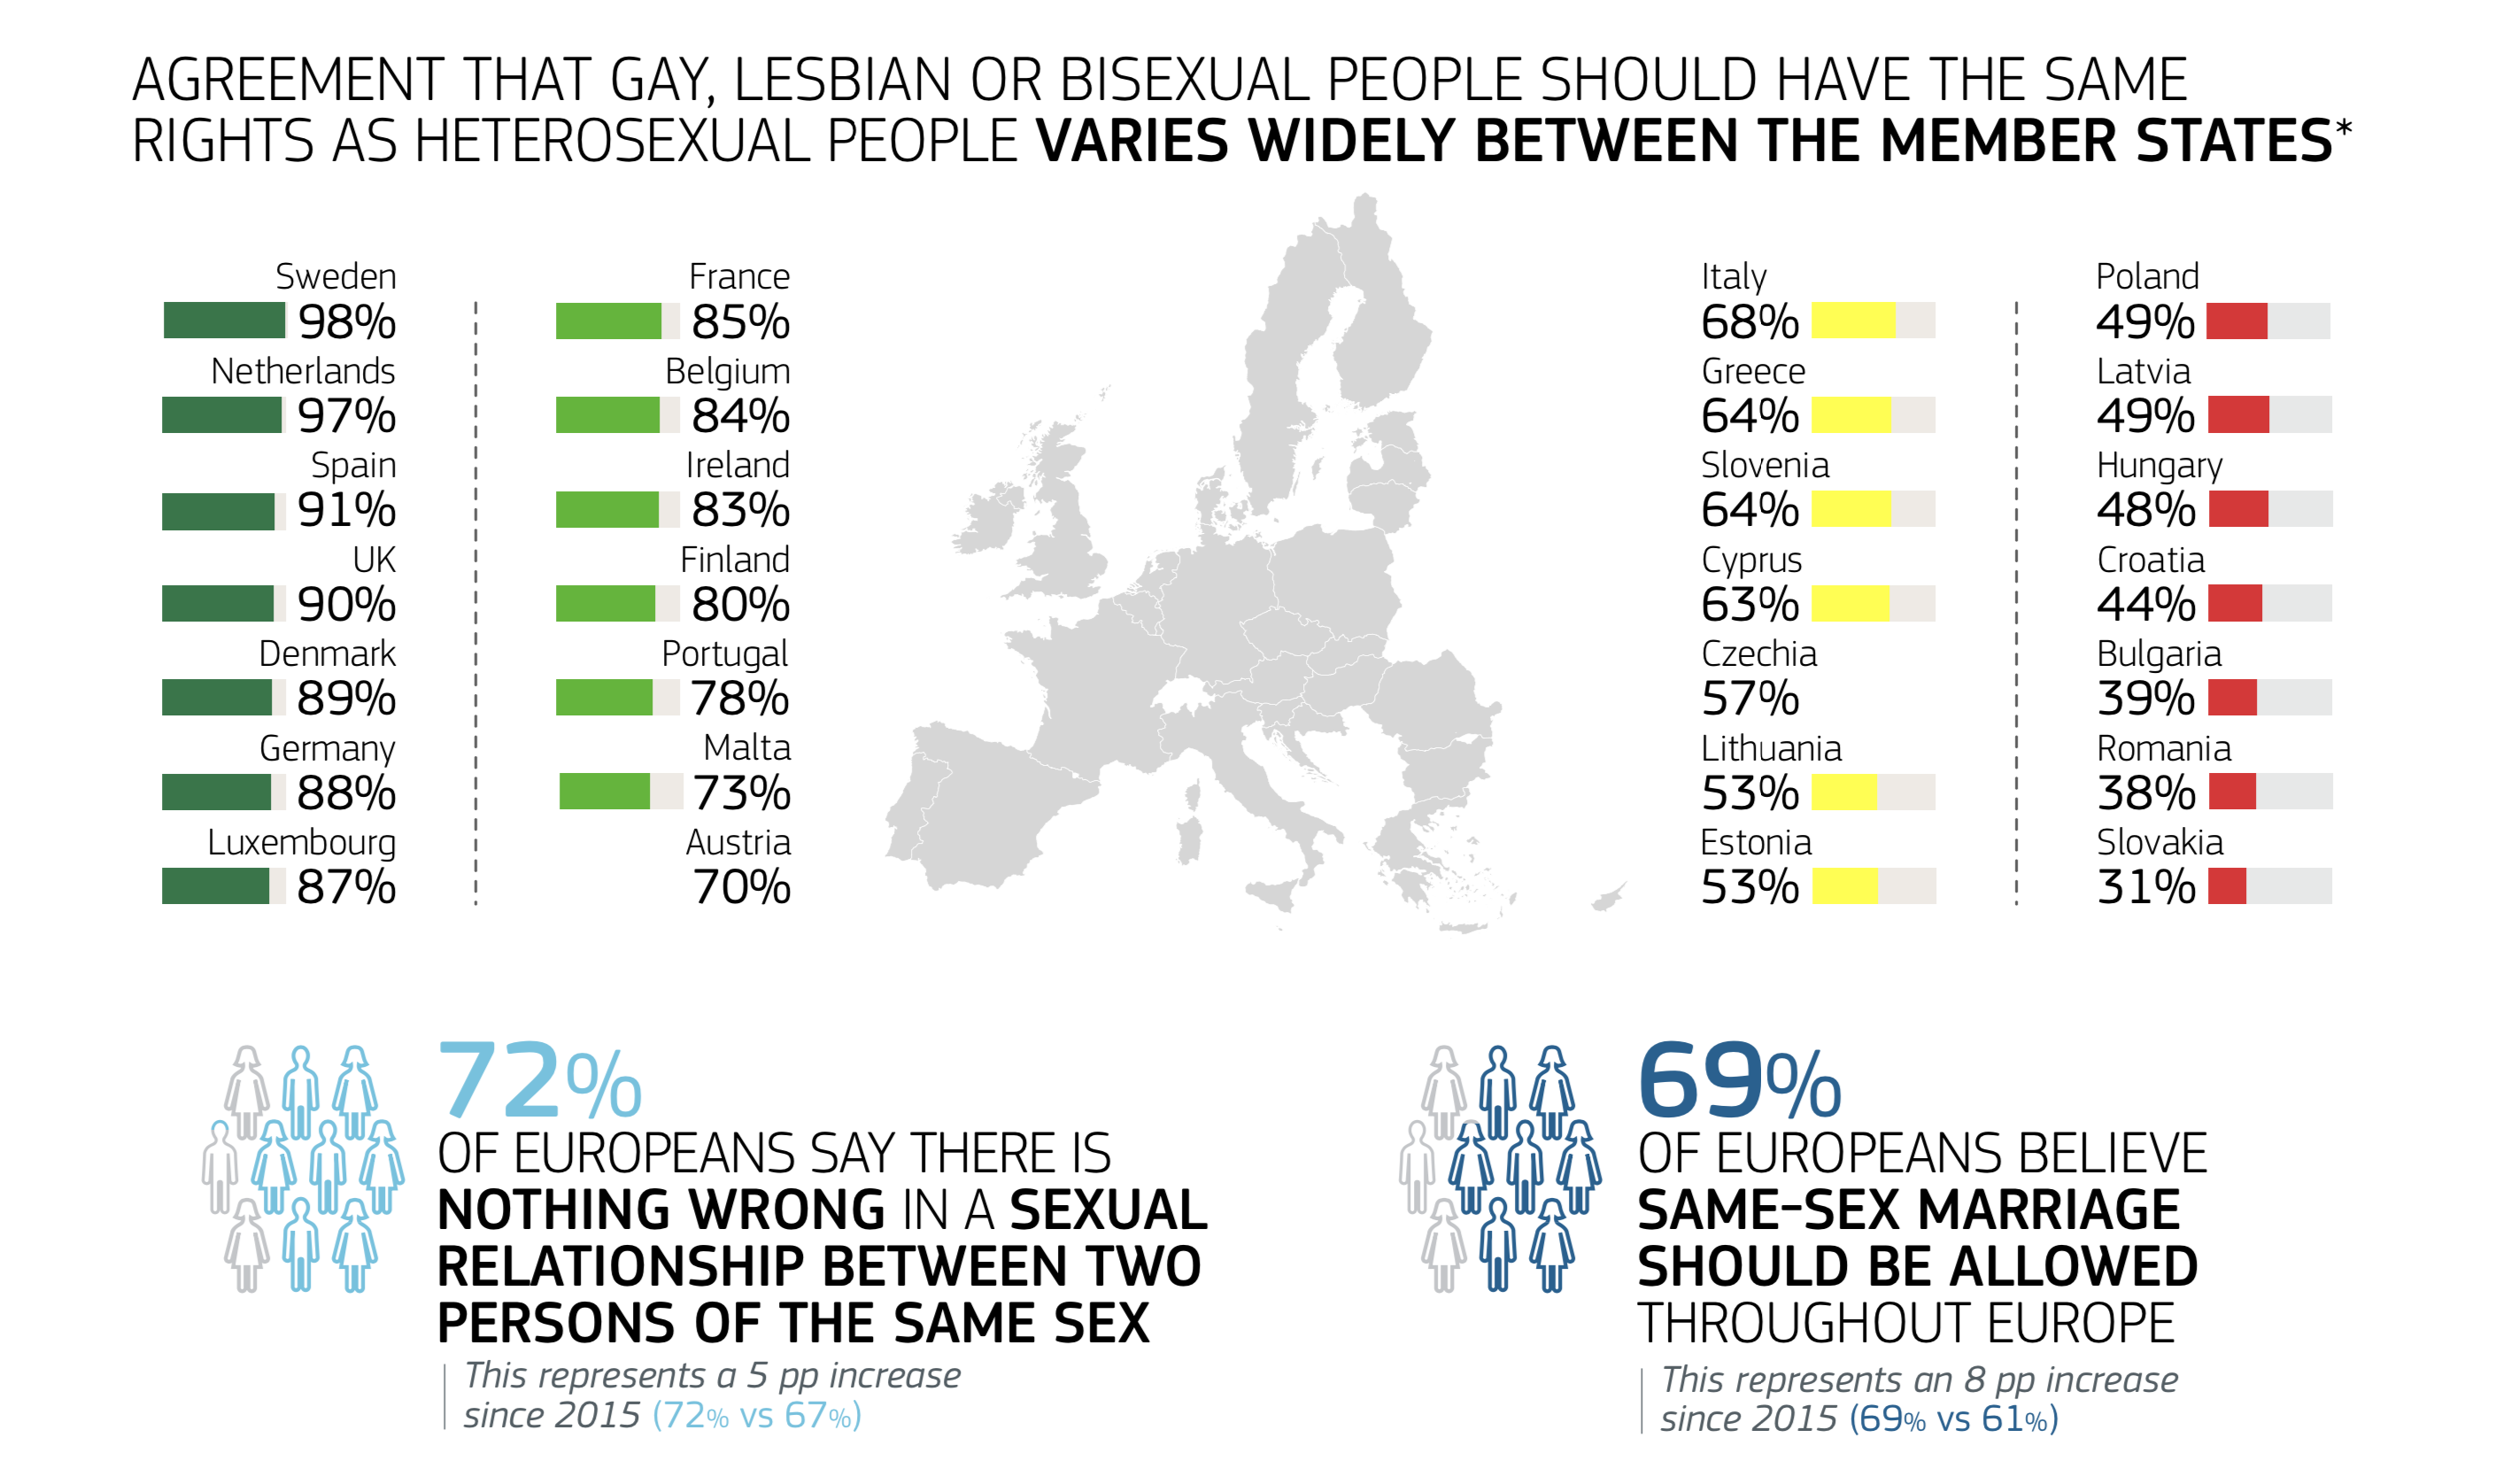 O Eurobarómetro coloca Espanha entre os países abertos às questões LGBT+